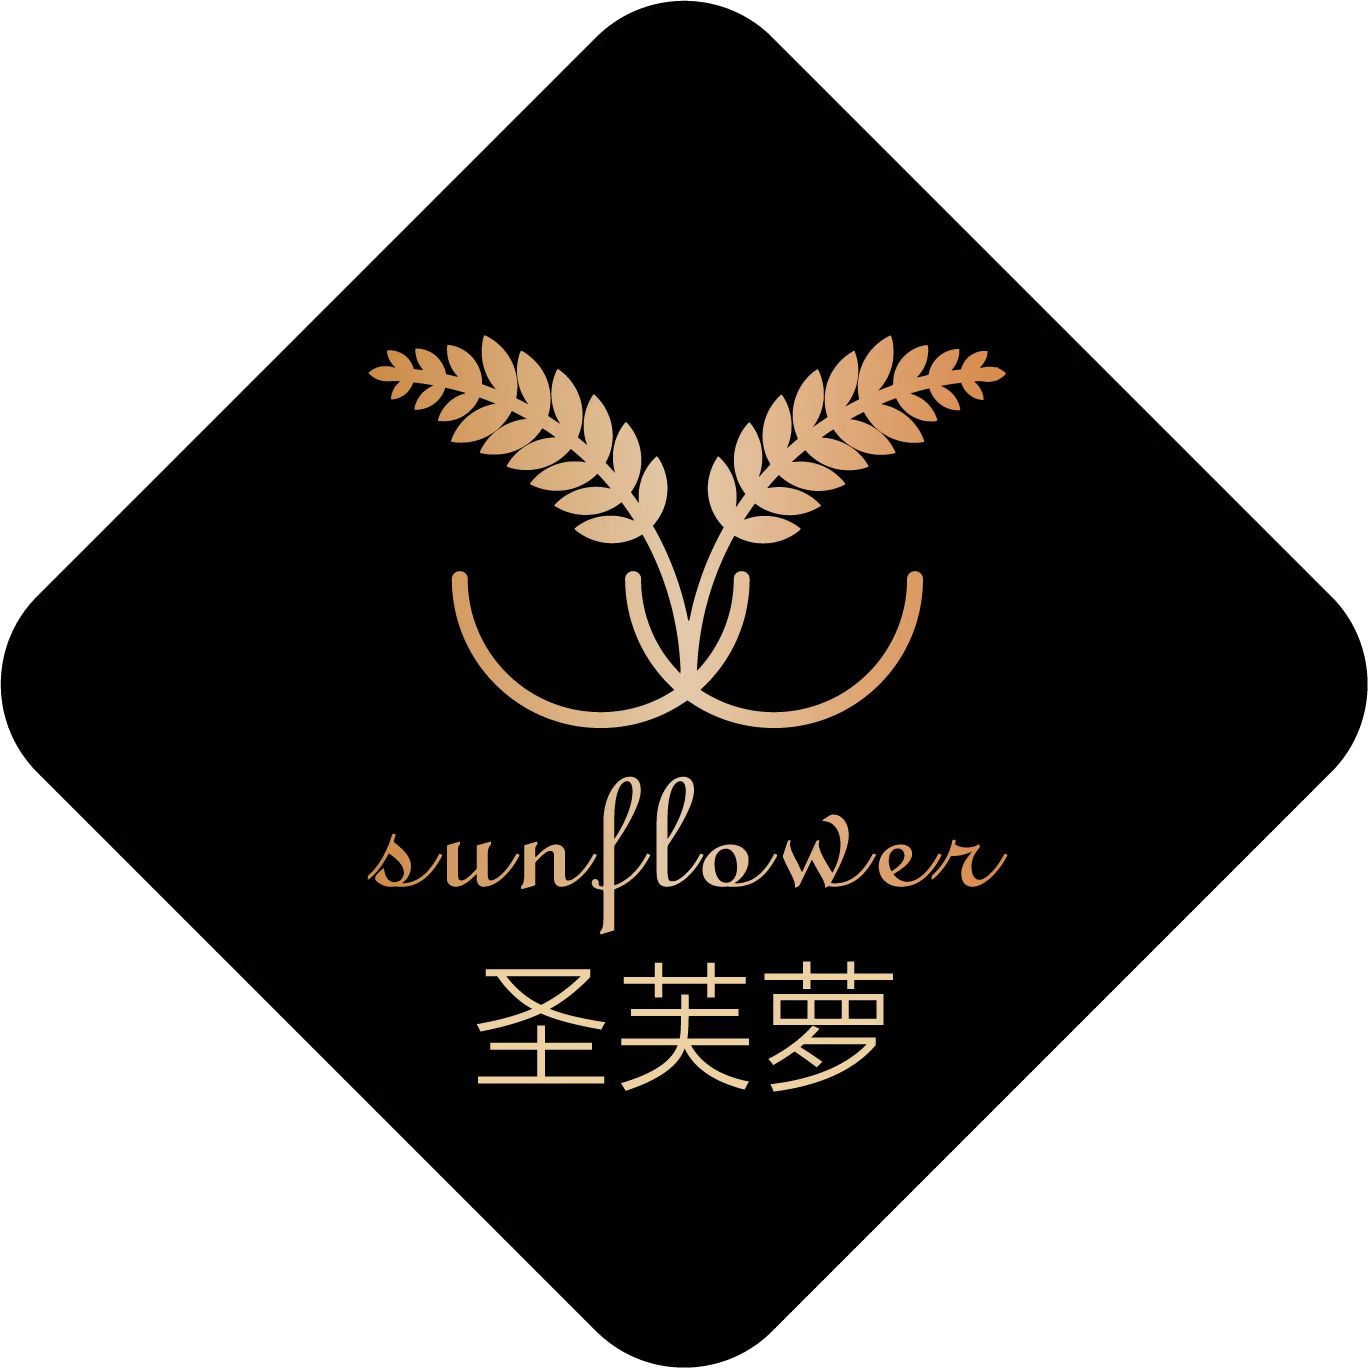 广州圣芙萝食品贸易有限公司